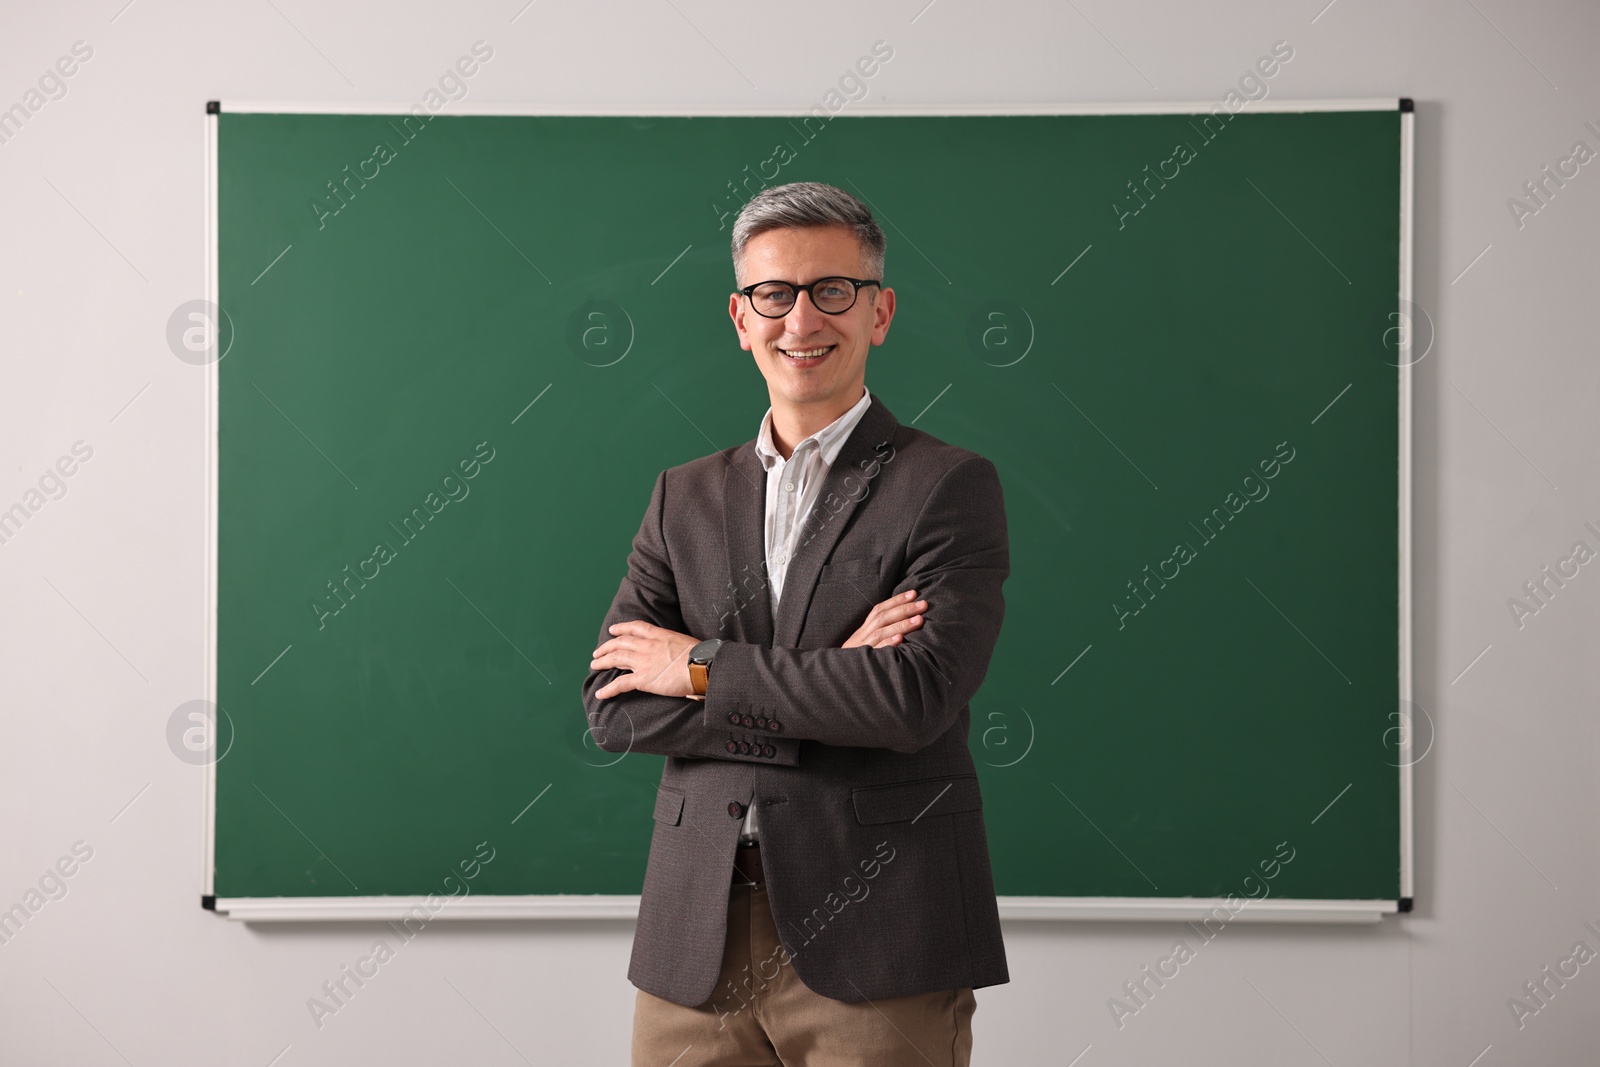 Photo of Teacher in glasses near chalkboard in classroom